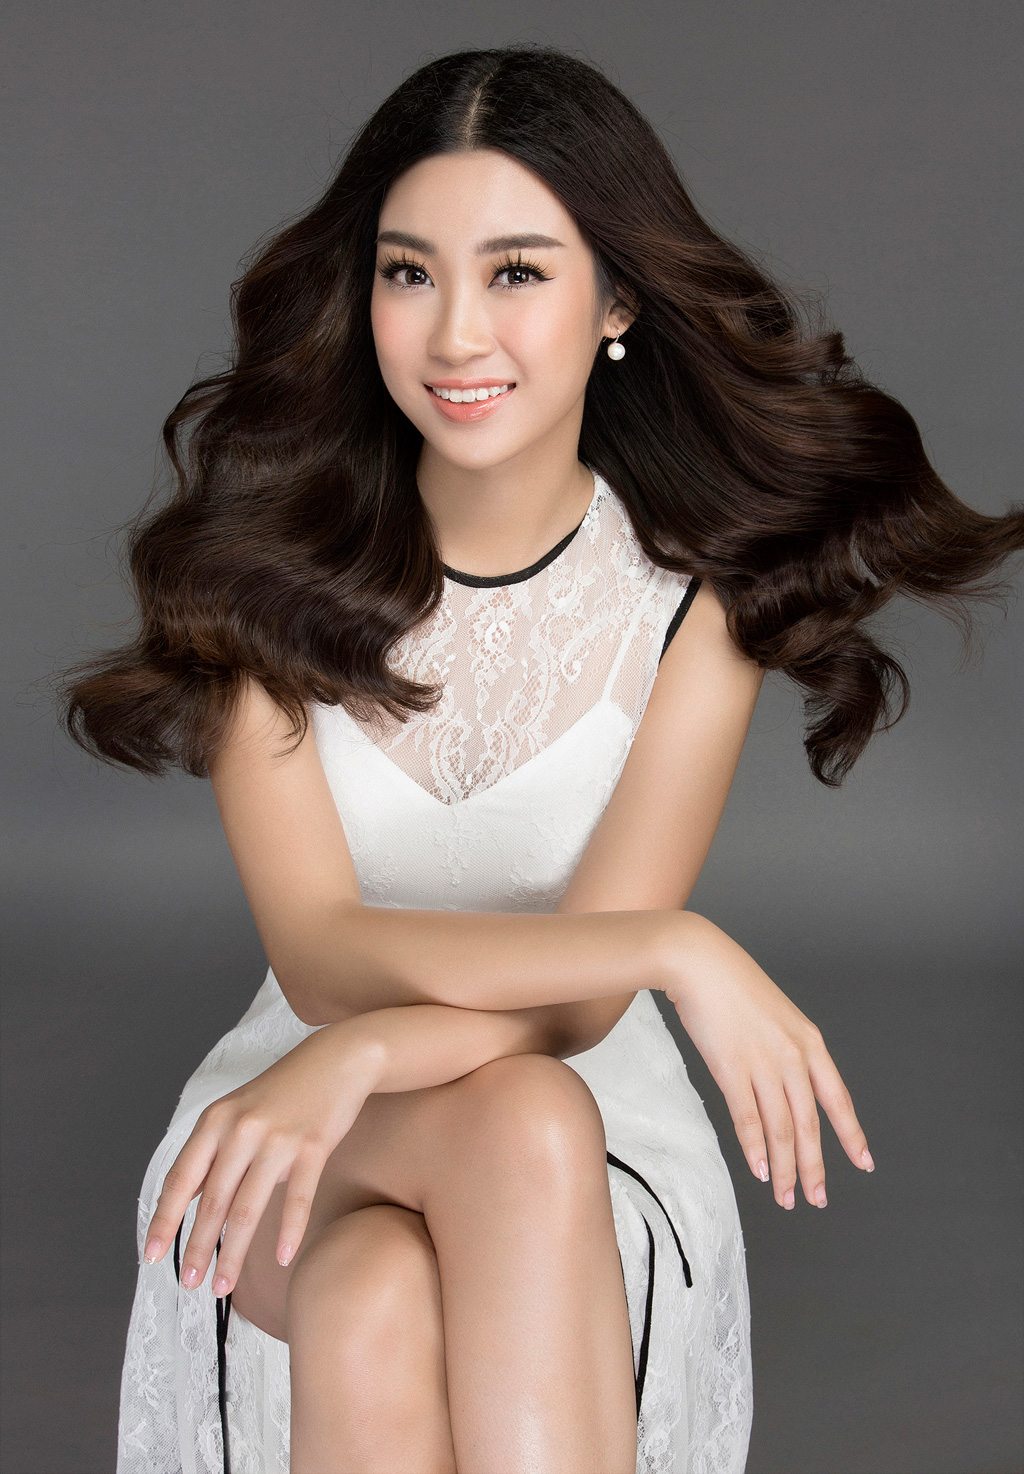 Hoa hậu Đỗ Mỹ Linh khoe vẻ đẹp nhẹ nhàng trong bộ ảnh mới 8